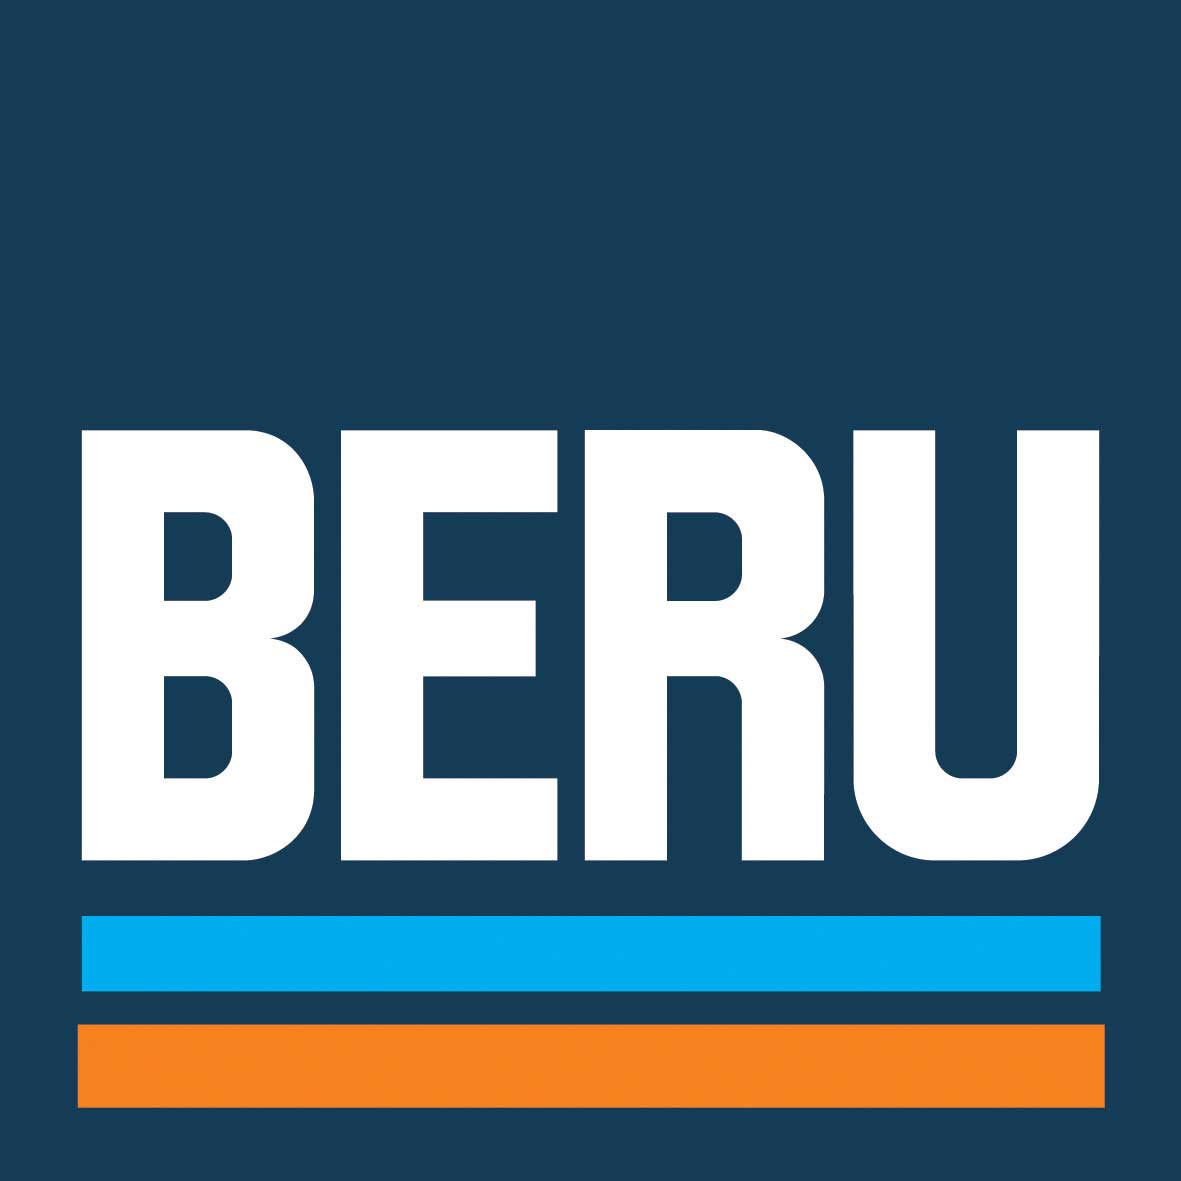 BERU for fiat diesel engines uk